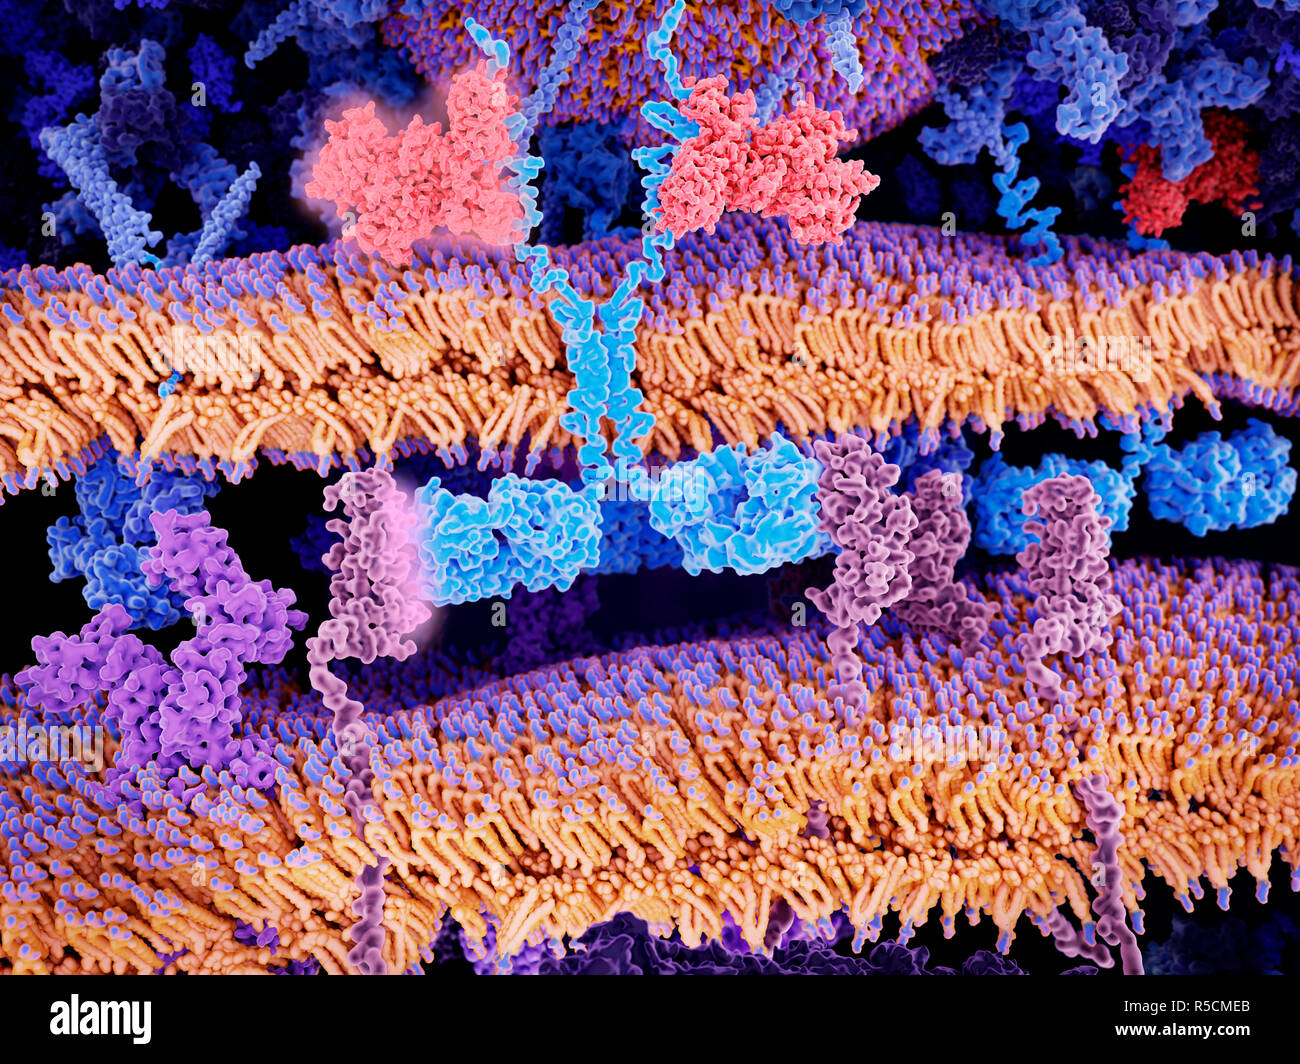 Location T cell l'immunothérapie du cancer, de l'illustration. Récepteur antigène chimérique (bleu clair, centre) se liant aux molécules CD19 (rose, en bas à droite et inférieure l Banque D'Images